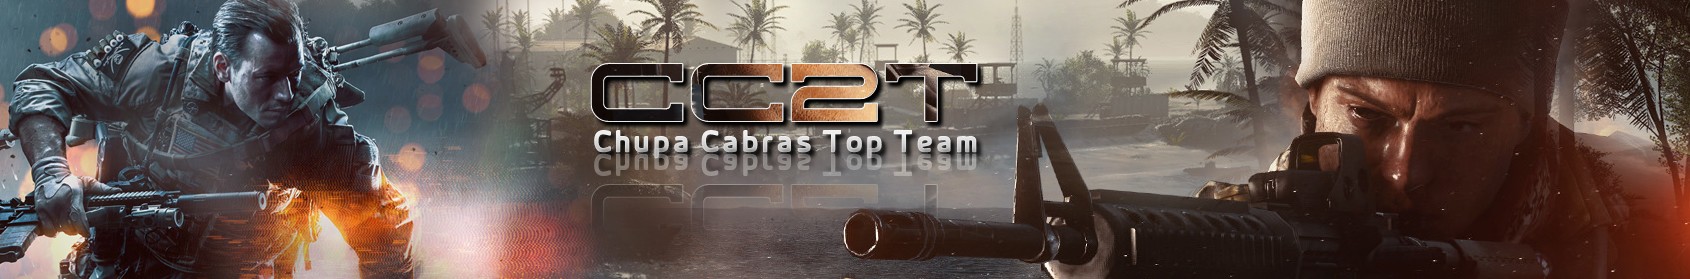 Chupa cabras Top Team - Cc2T